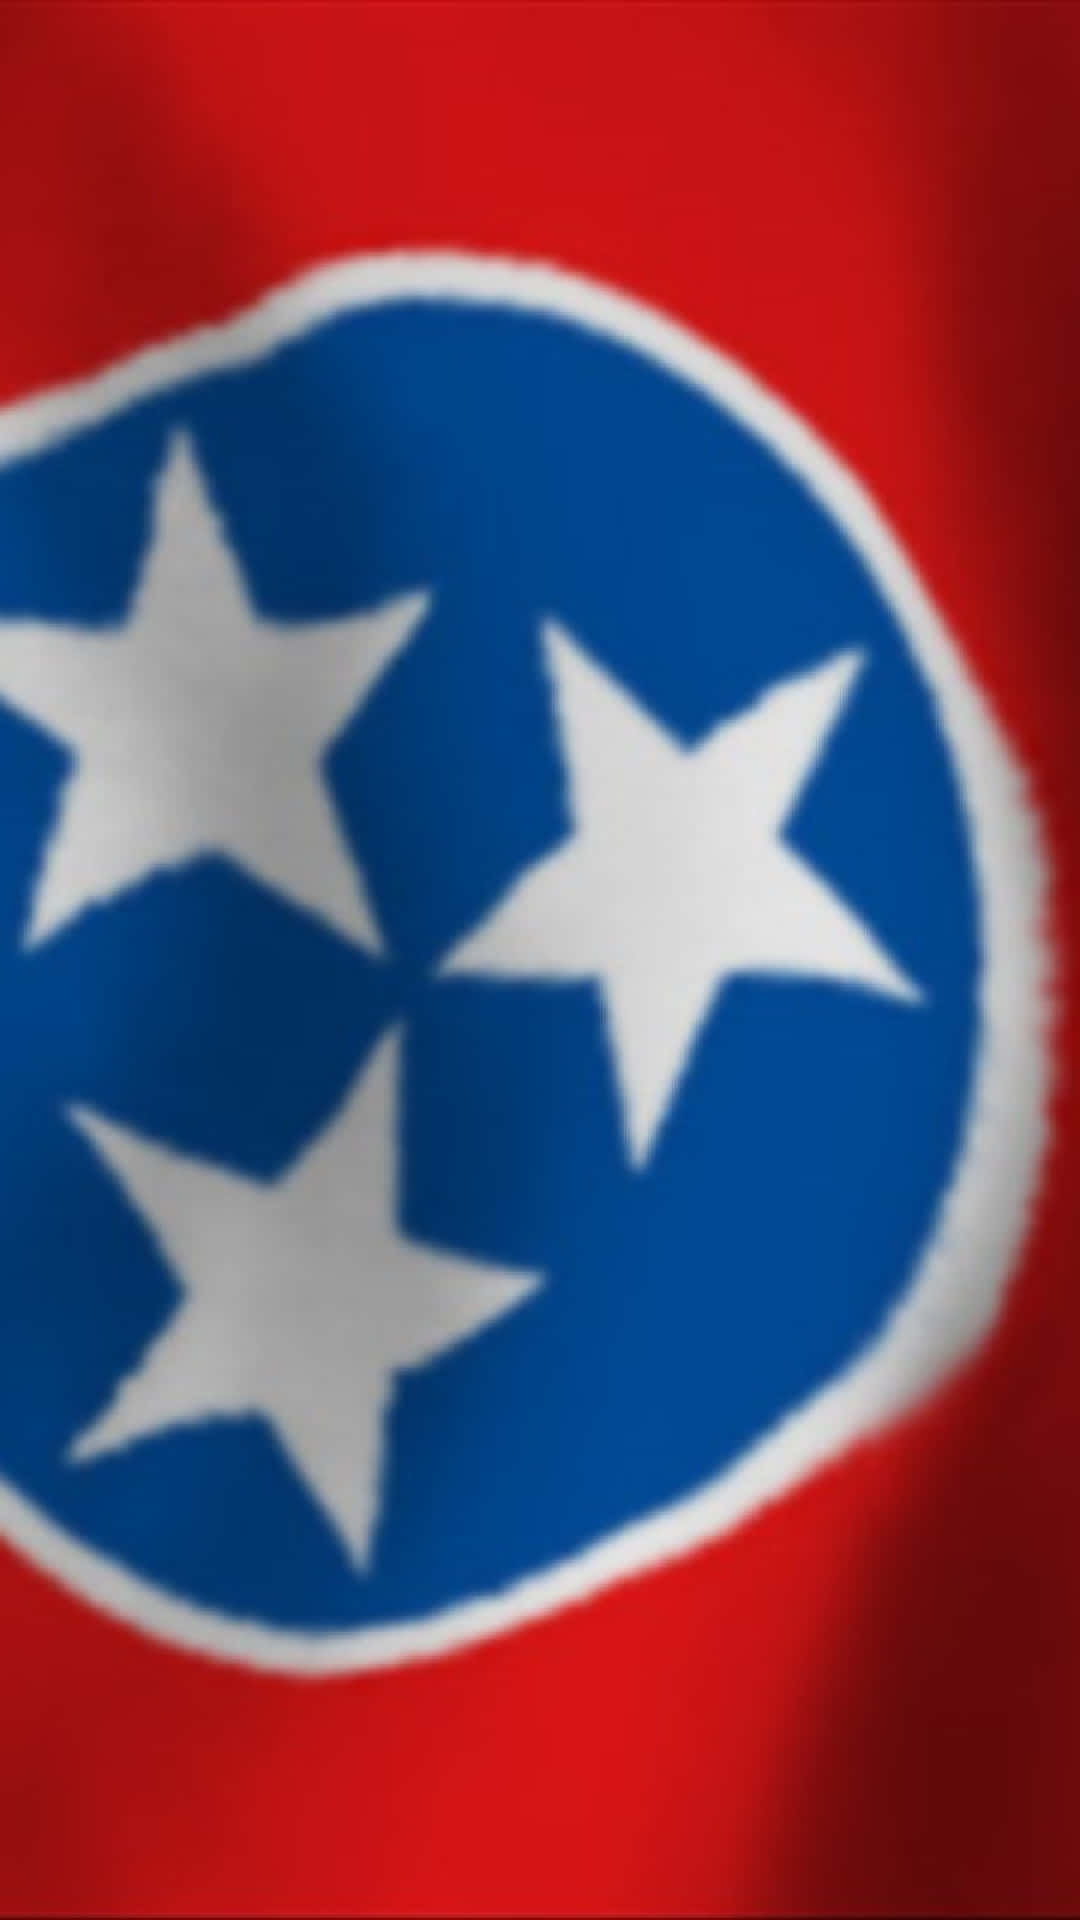 Imagenuna Bandera Estadounidense Del Estado De Tennessee. Fondo de pantalla